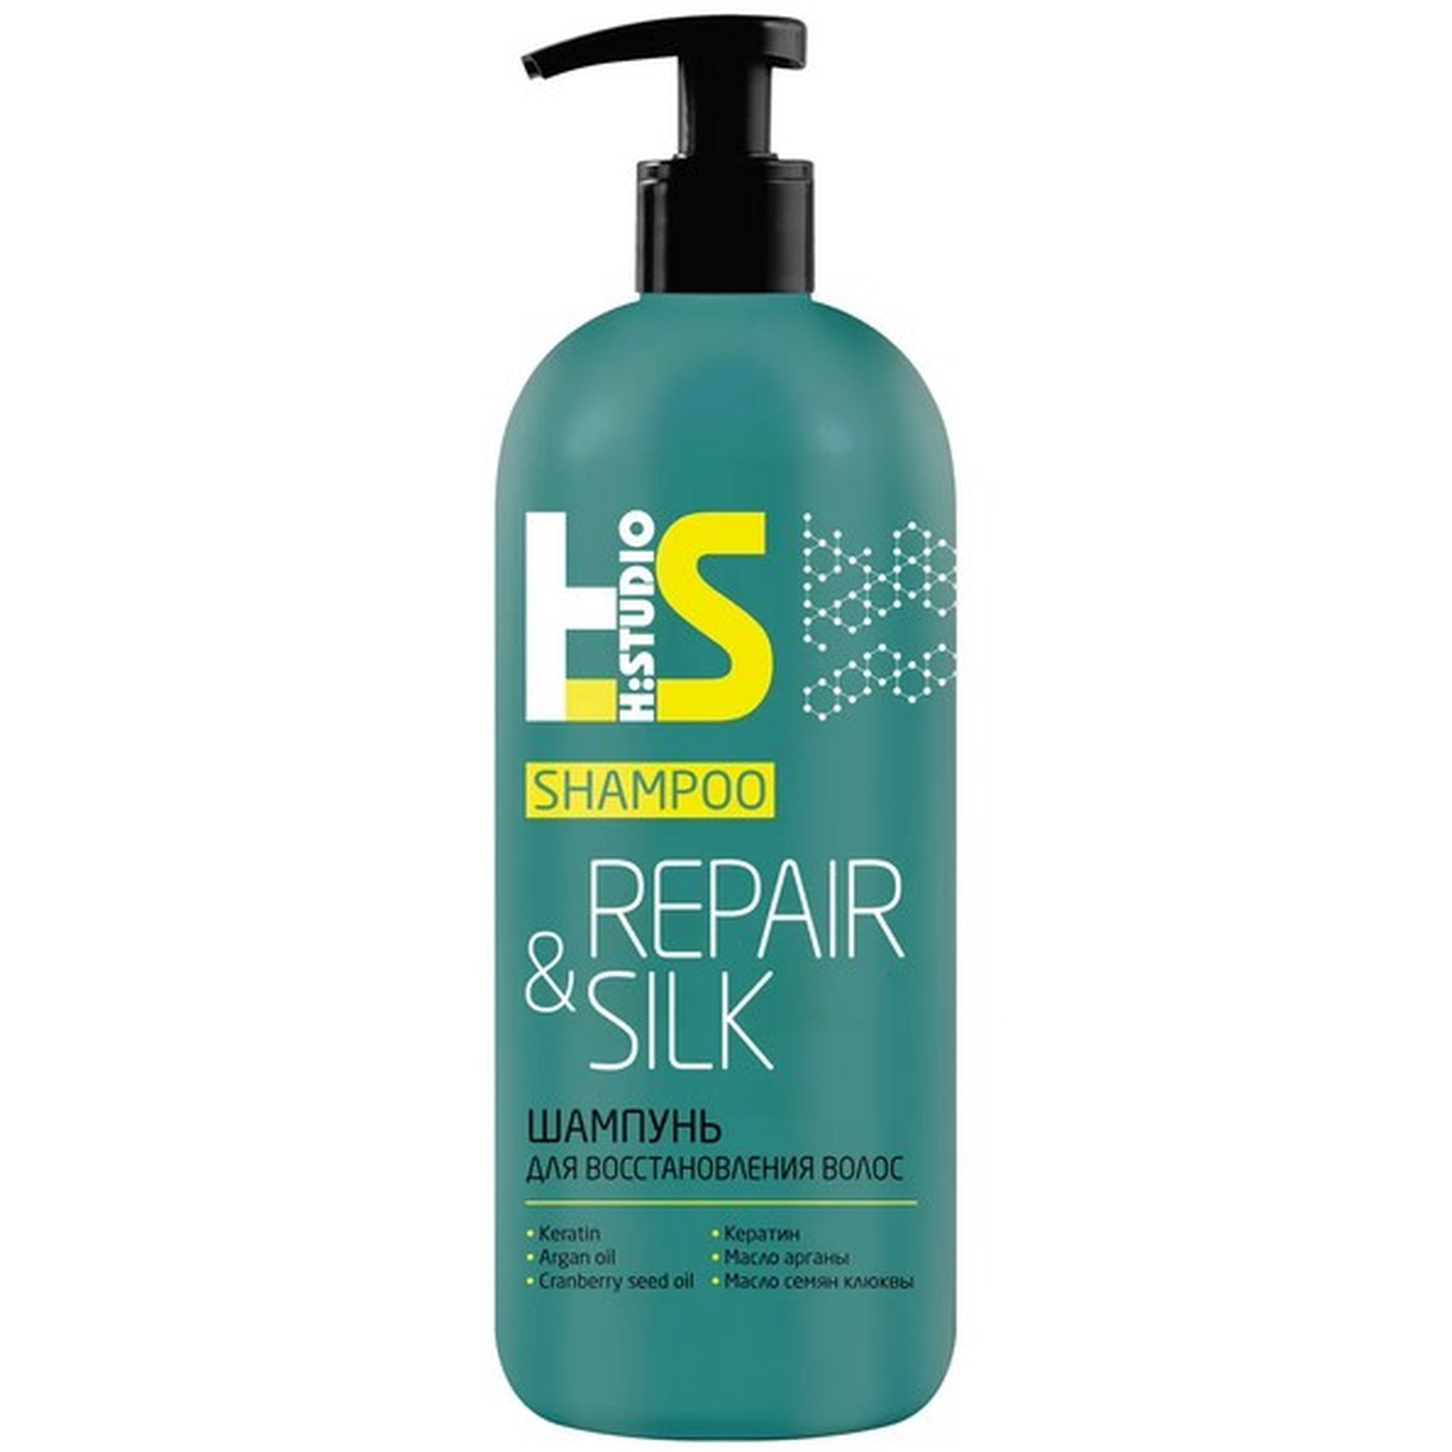 Шампунь H:Studio для восстановления волос Repair&Silk 400г Ромакс/12/ОПТ